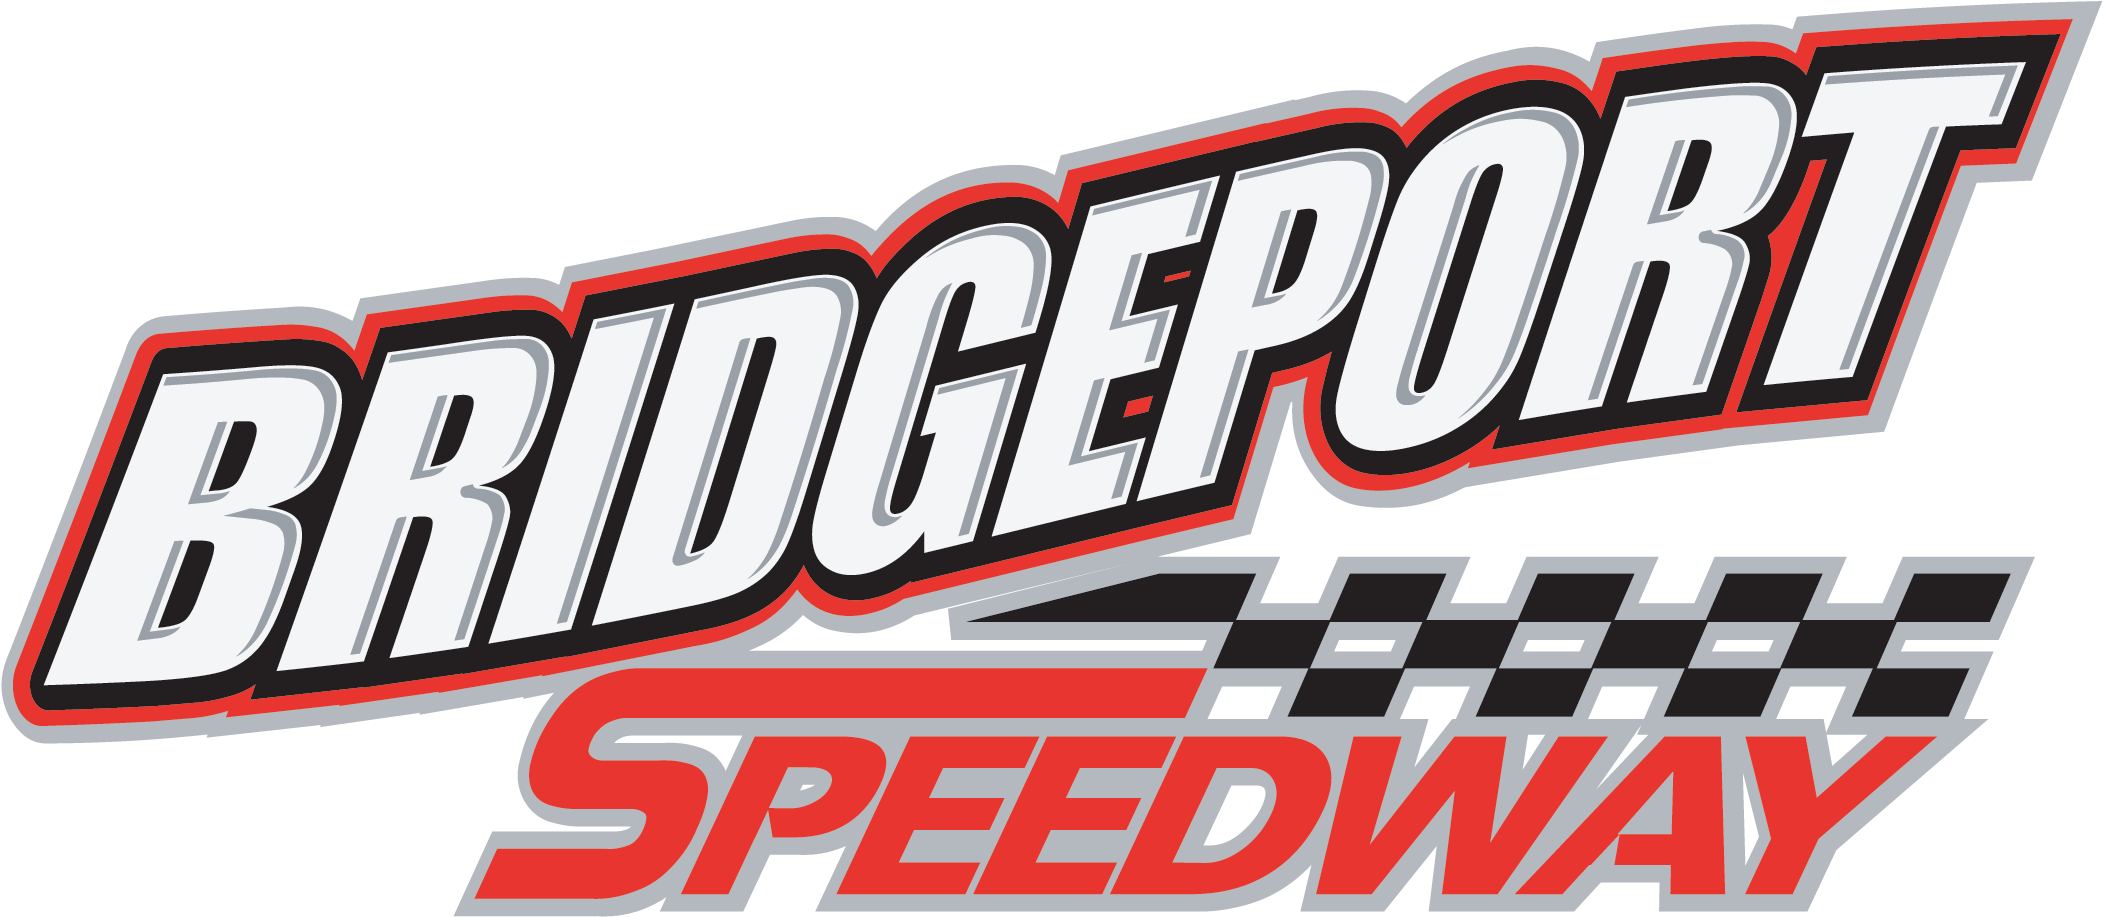 Packed Schedule For Bridgeport Speedway Bridgeport Speedway Clipart